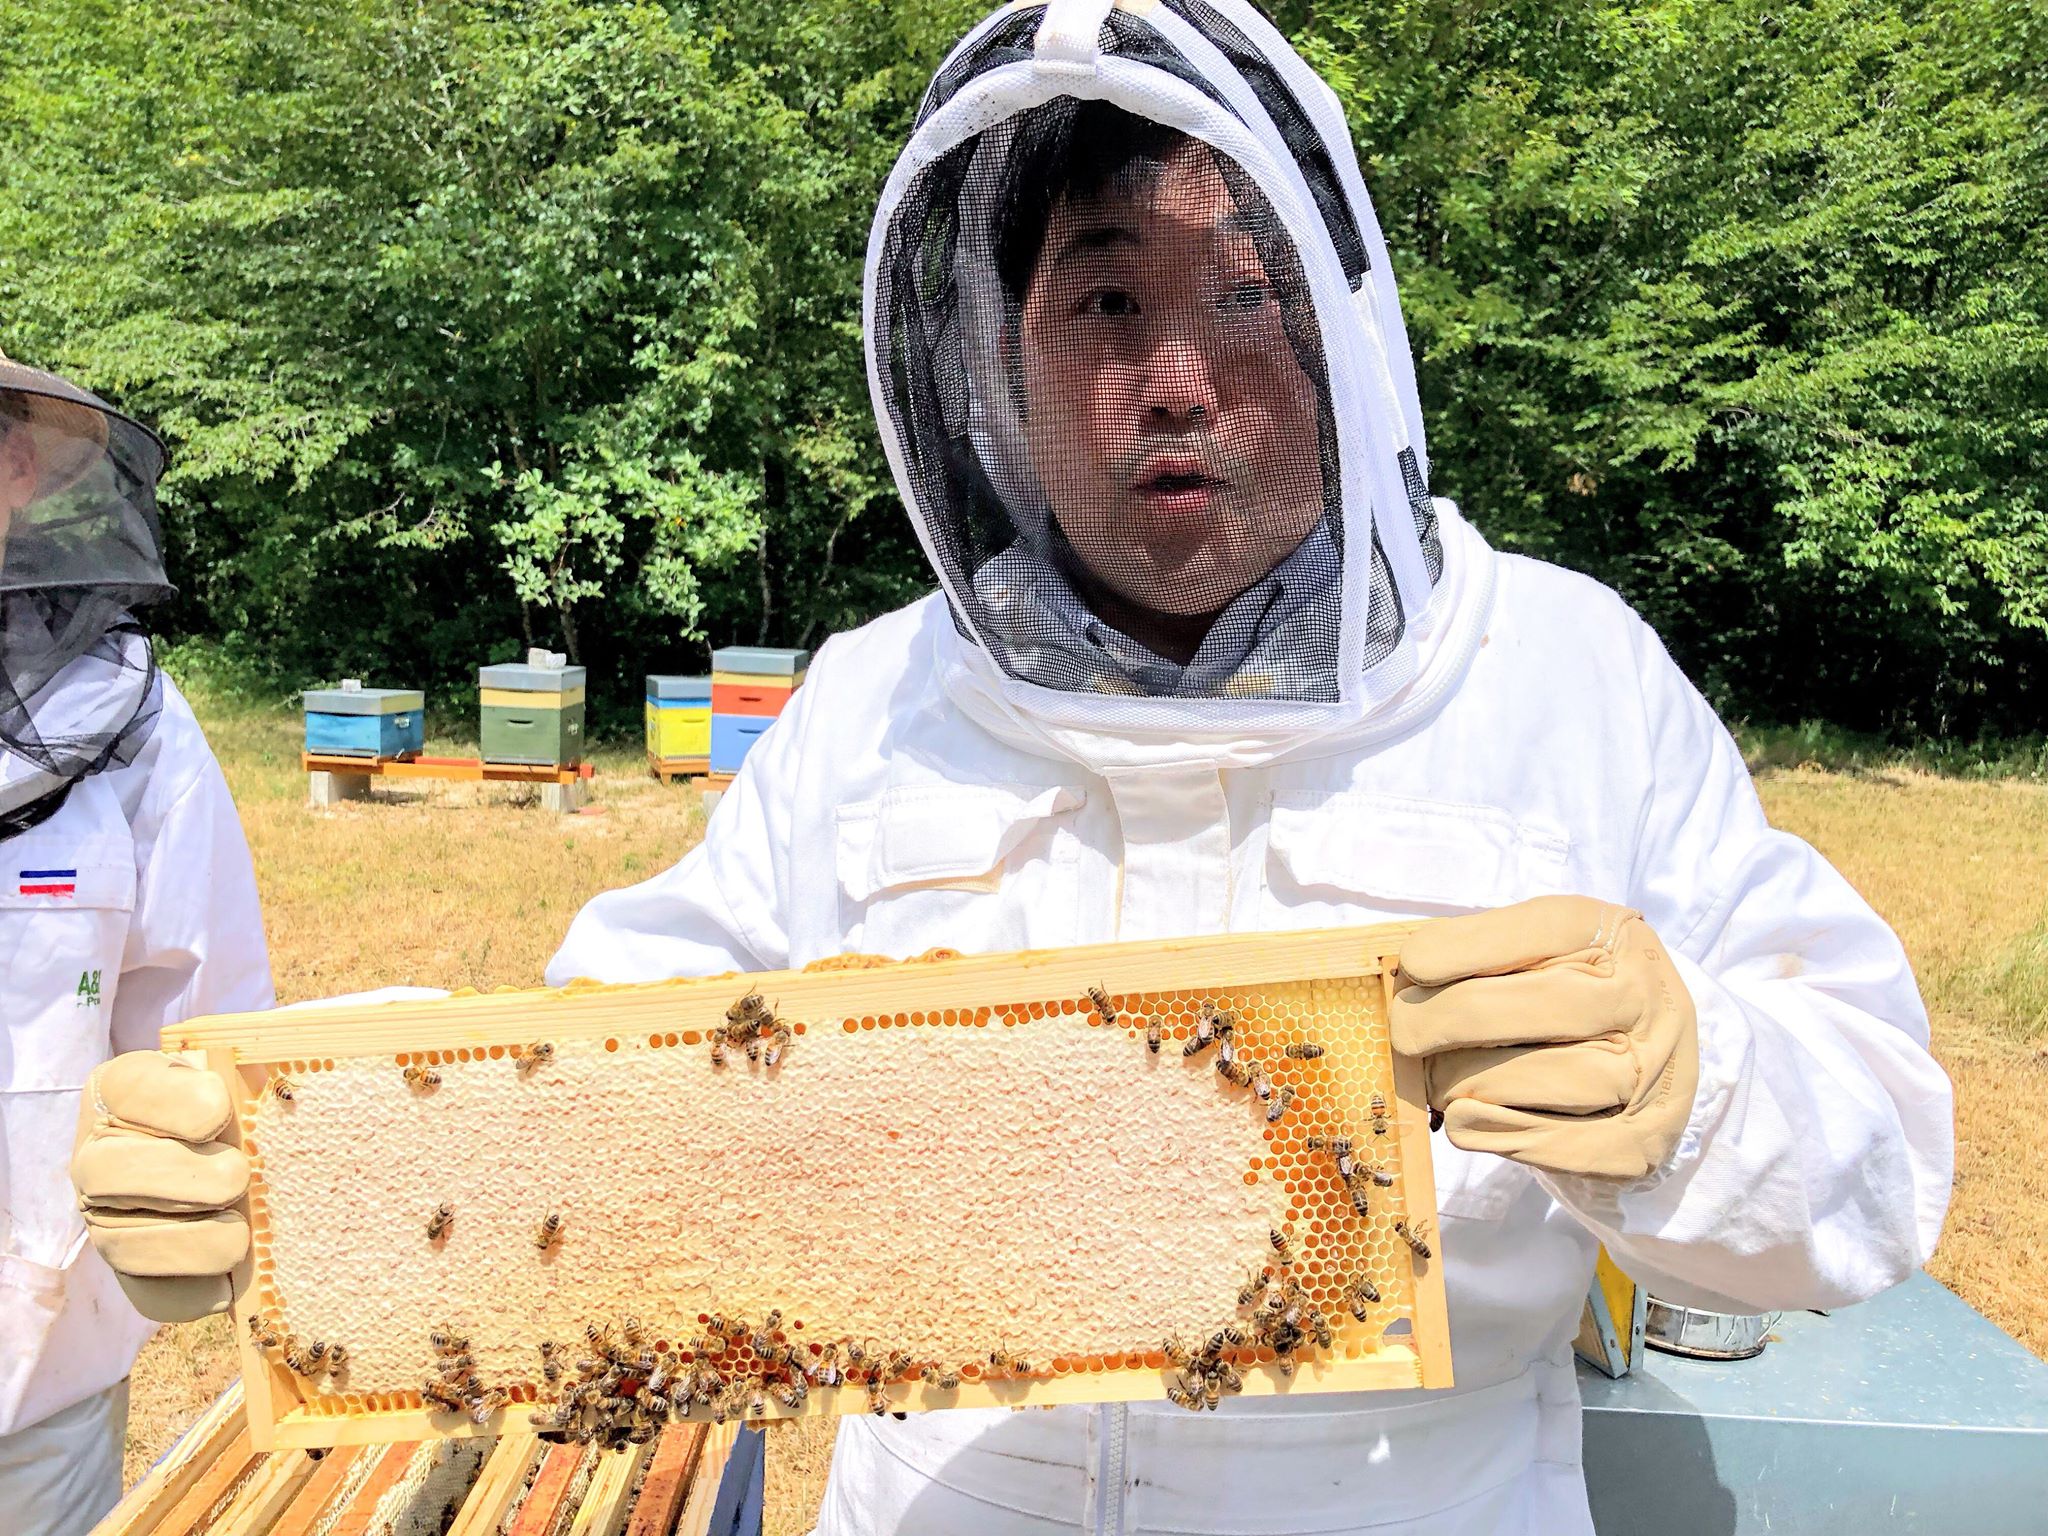 Les chefs et les produits de la ruche - Une histoire d'amour des